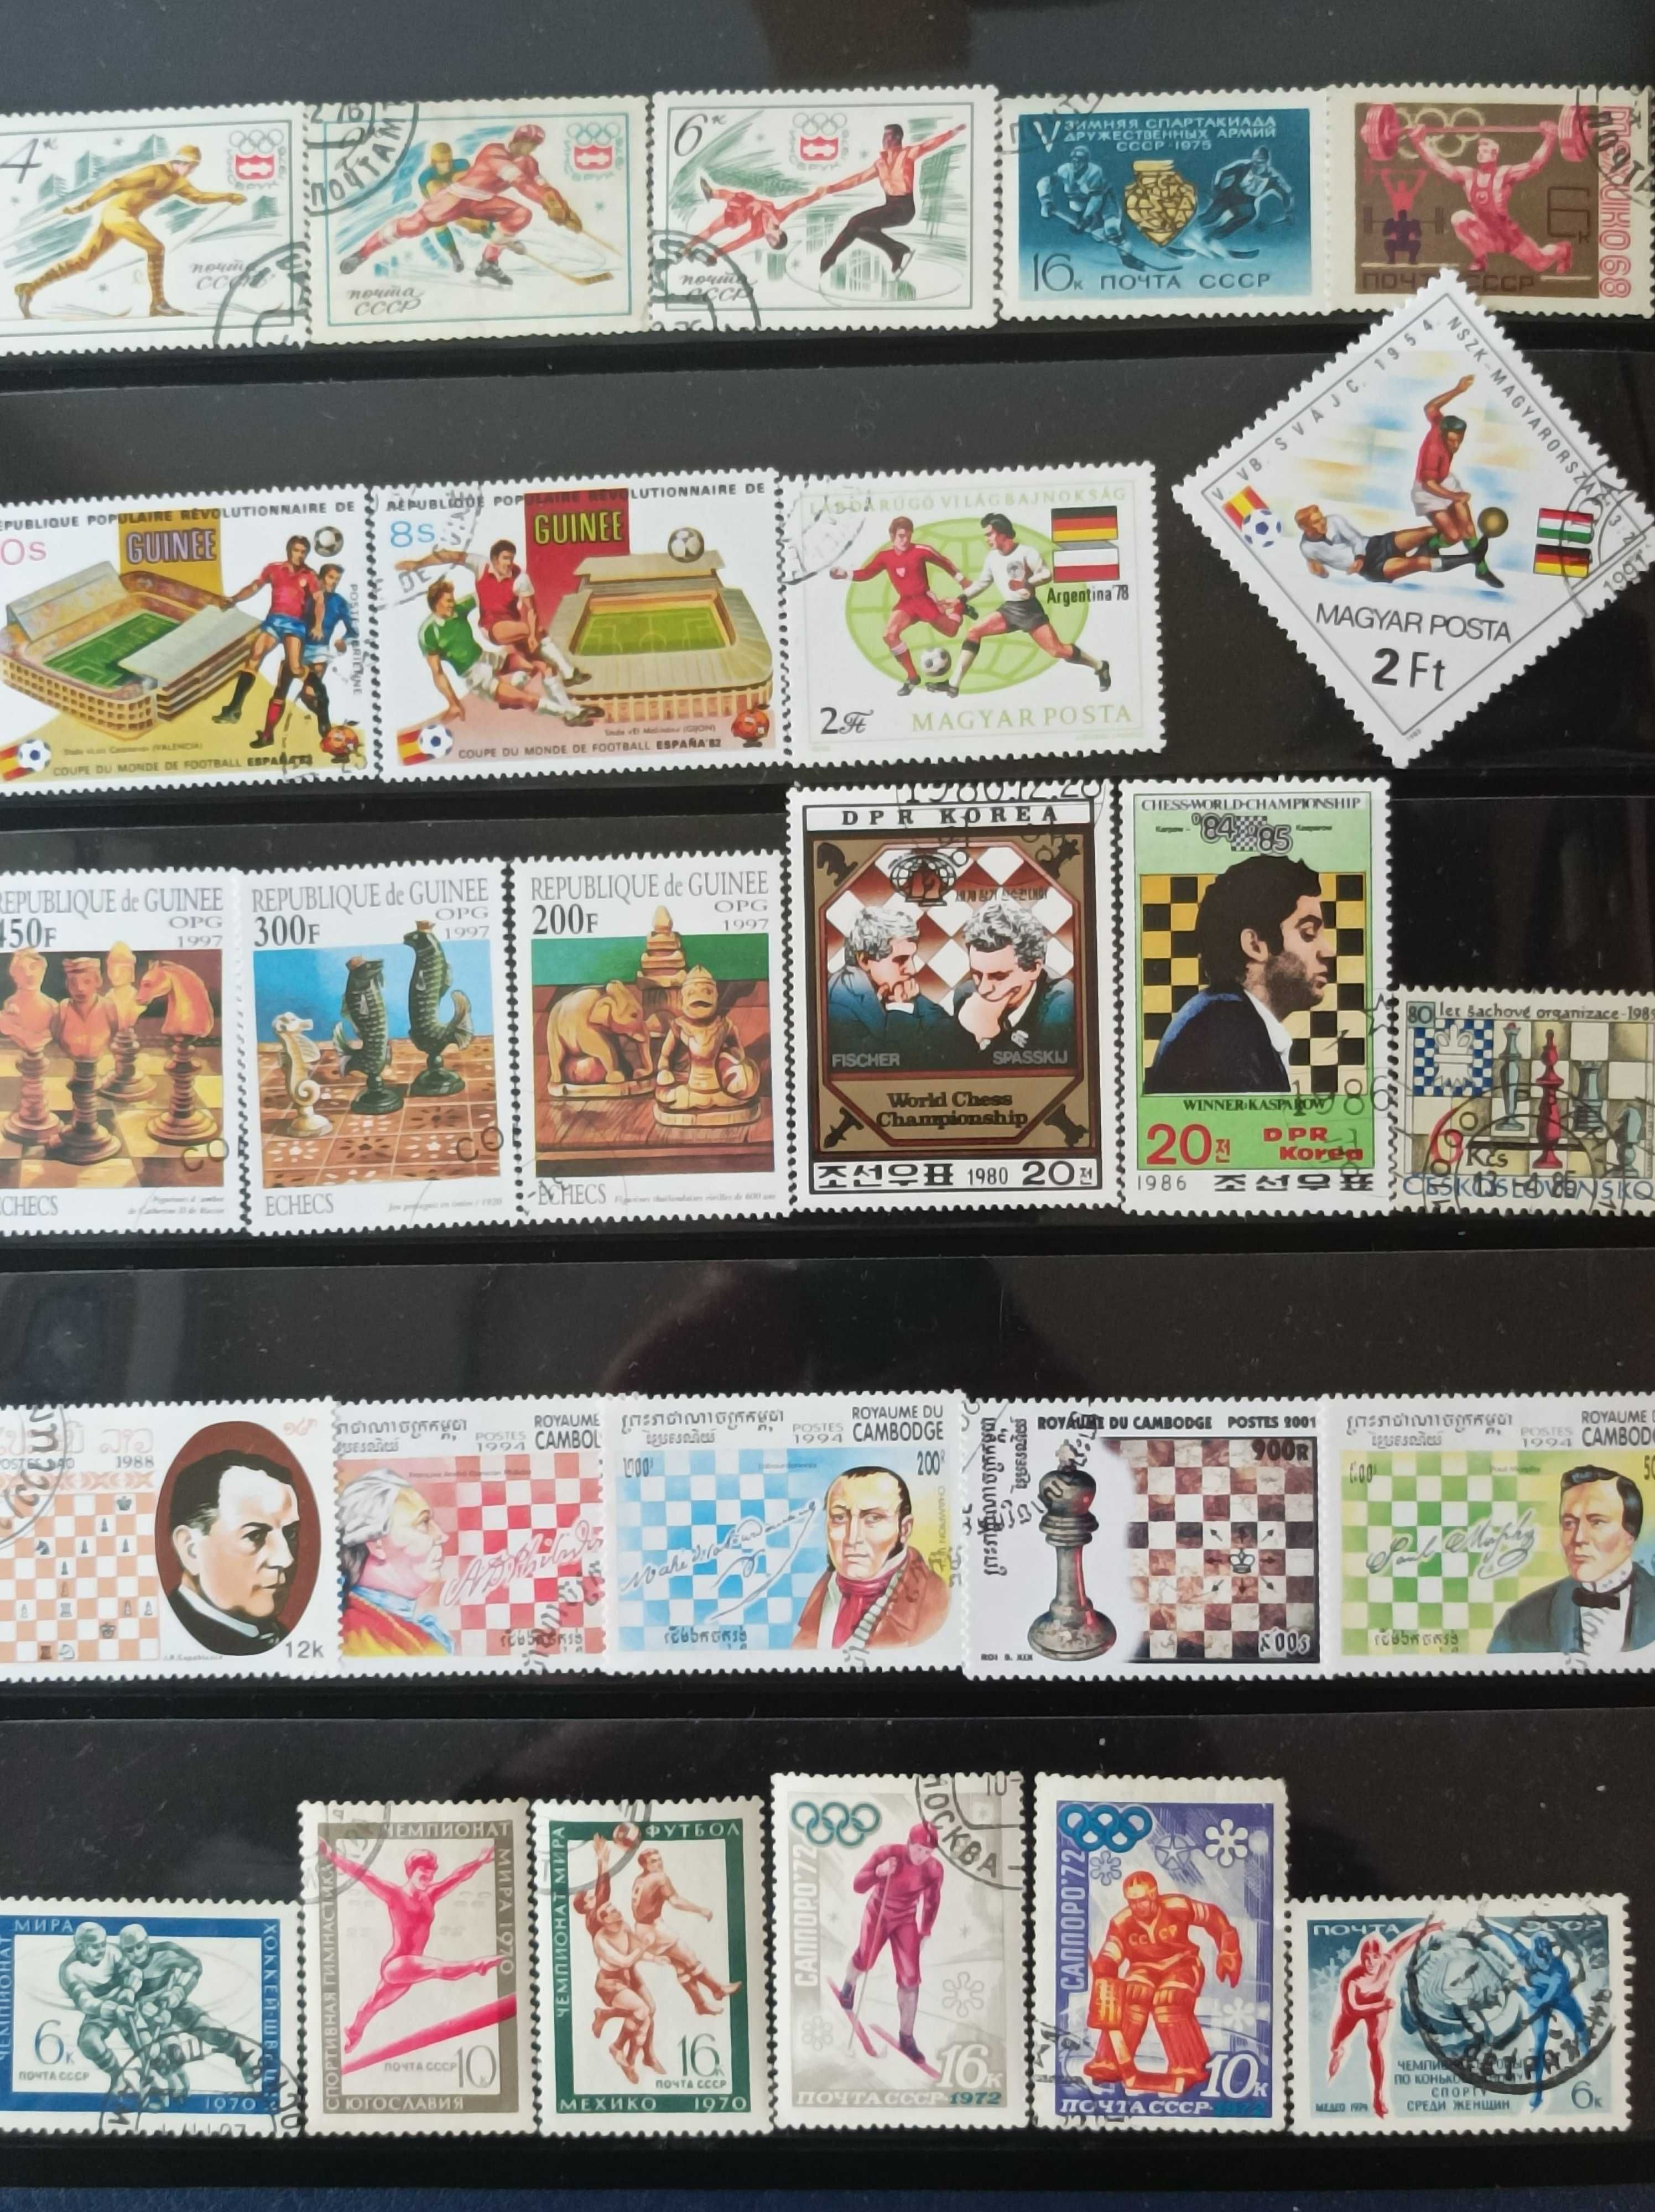 Пощенски марки на теми - архитектура и спорт